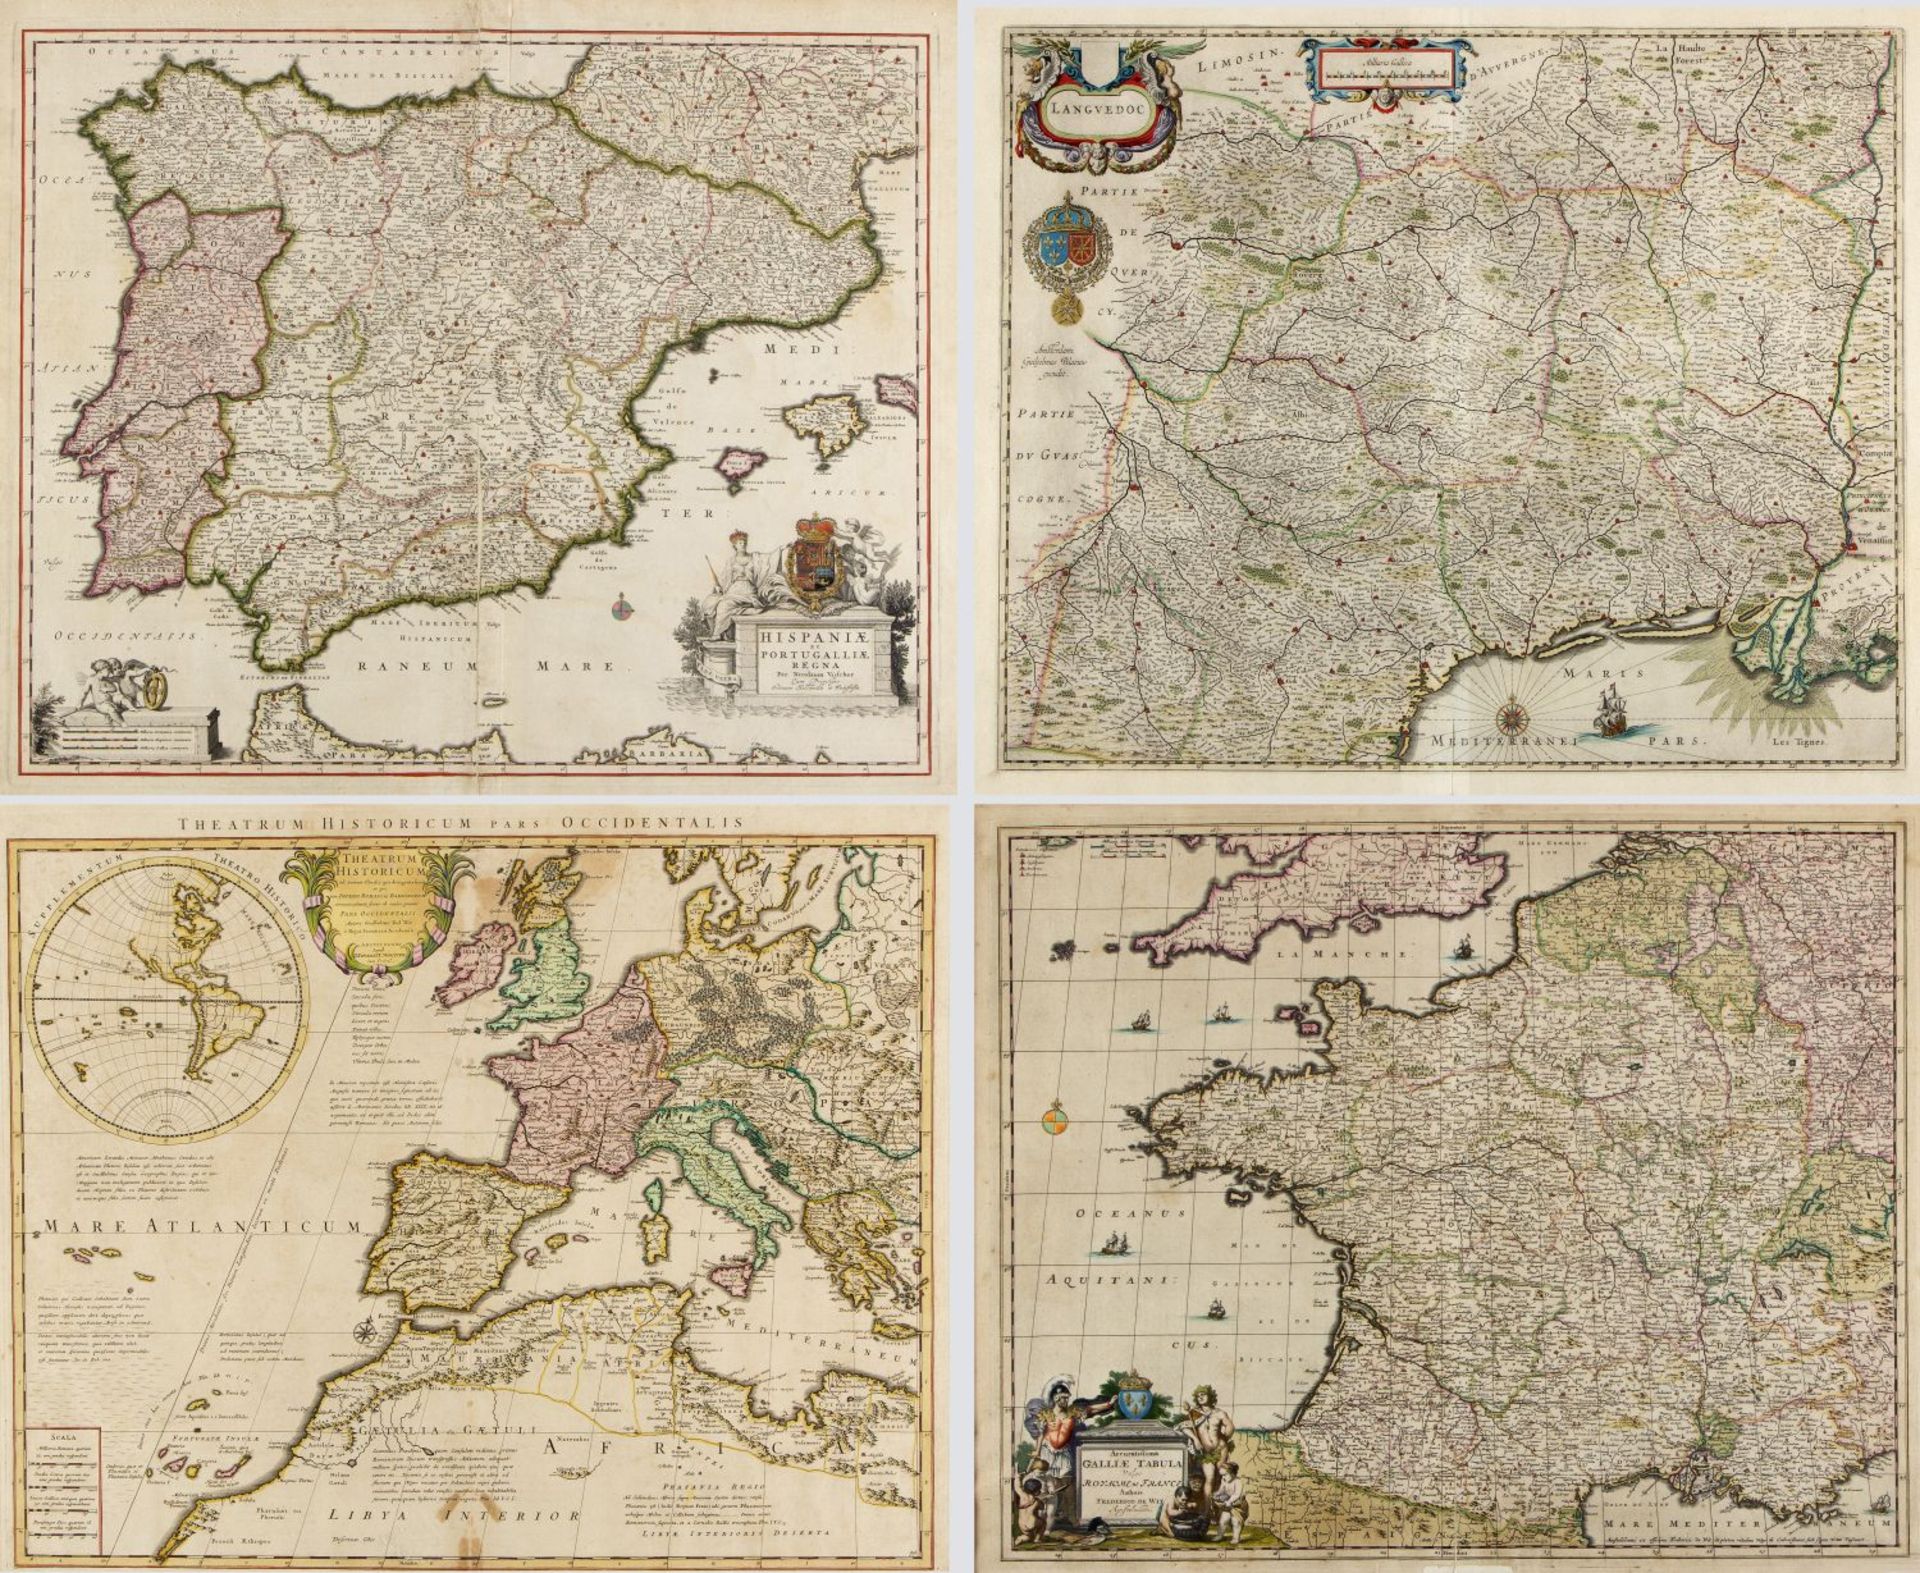 Wit, F. de. Vischer, N. Blaue, G. u.a. Principatus Cataloniae. Hispaniae et Portugalliae. Languedoc 